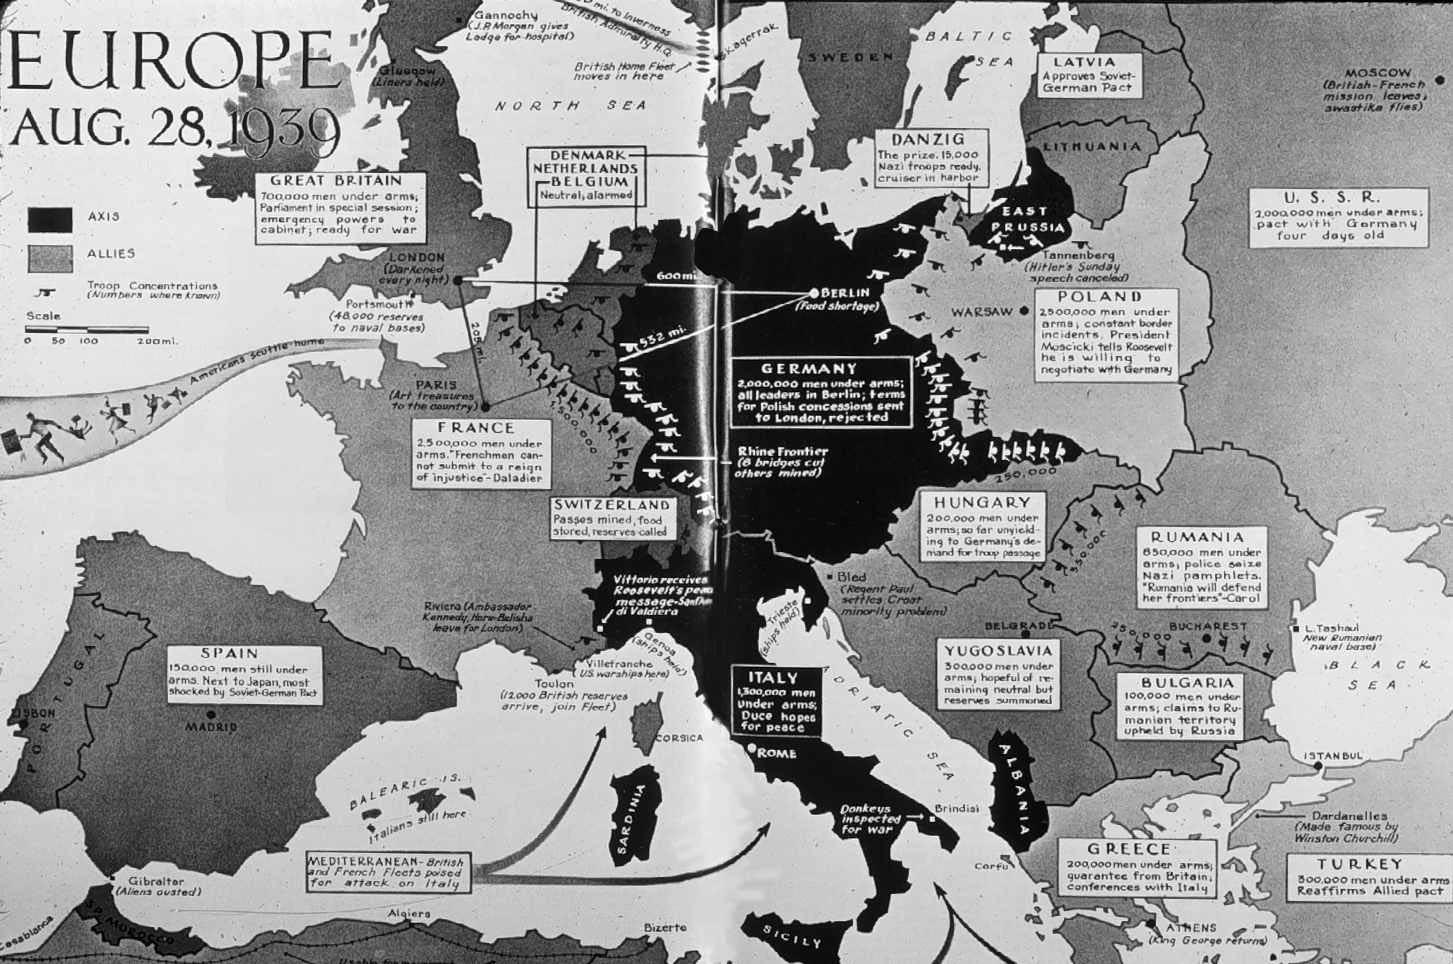 Europe Map 1939